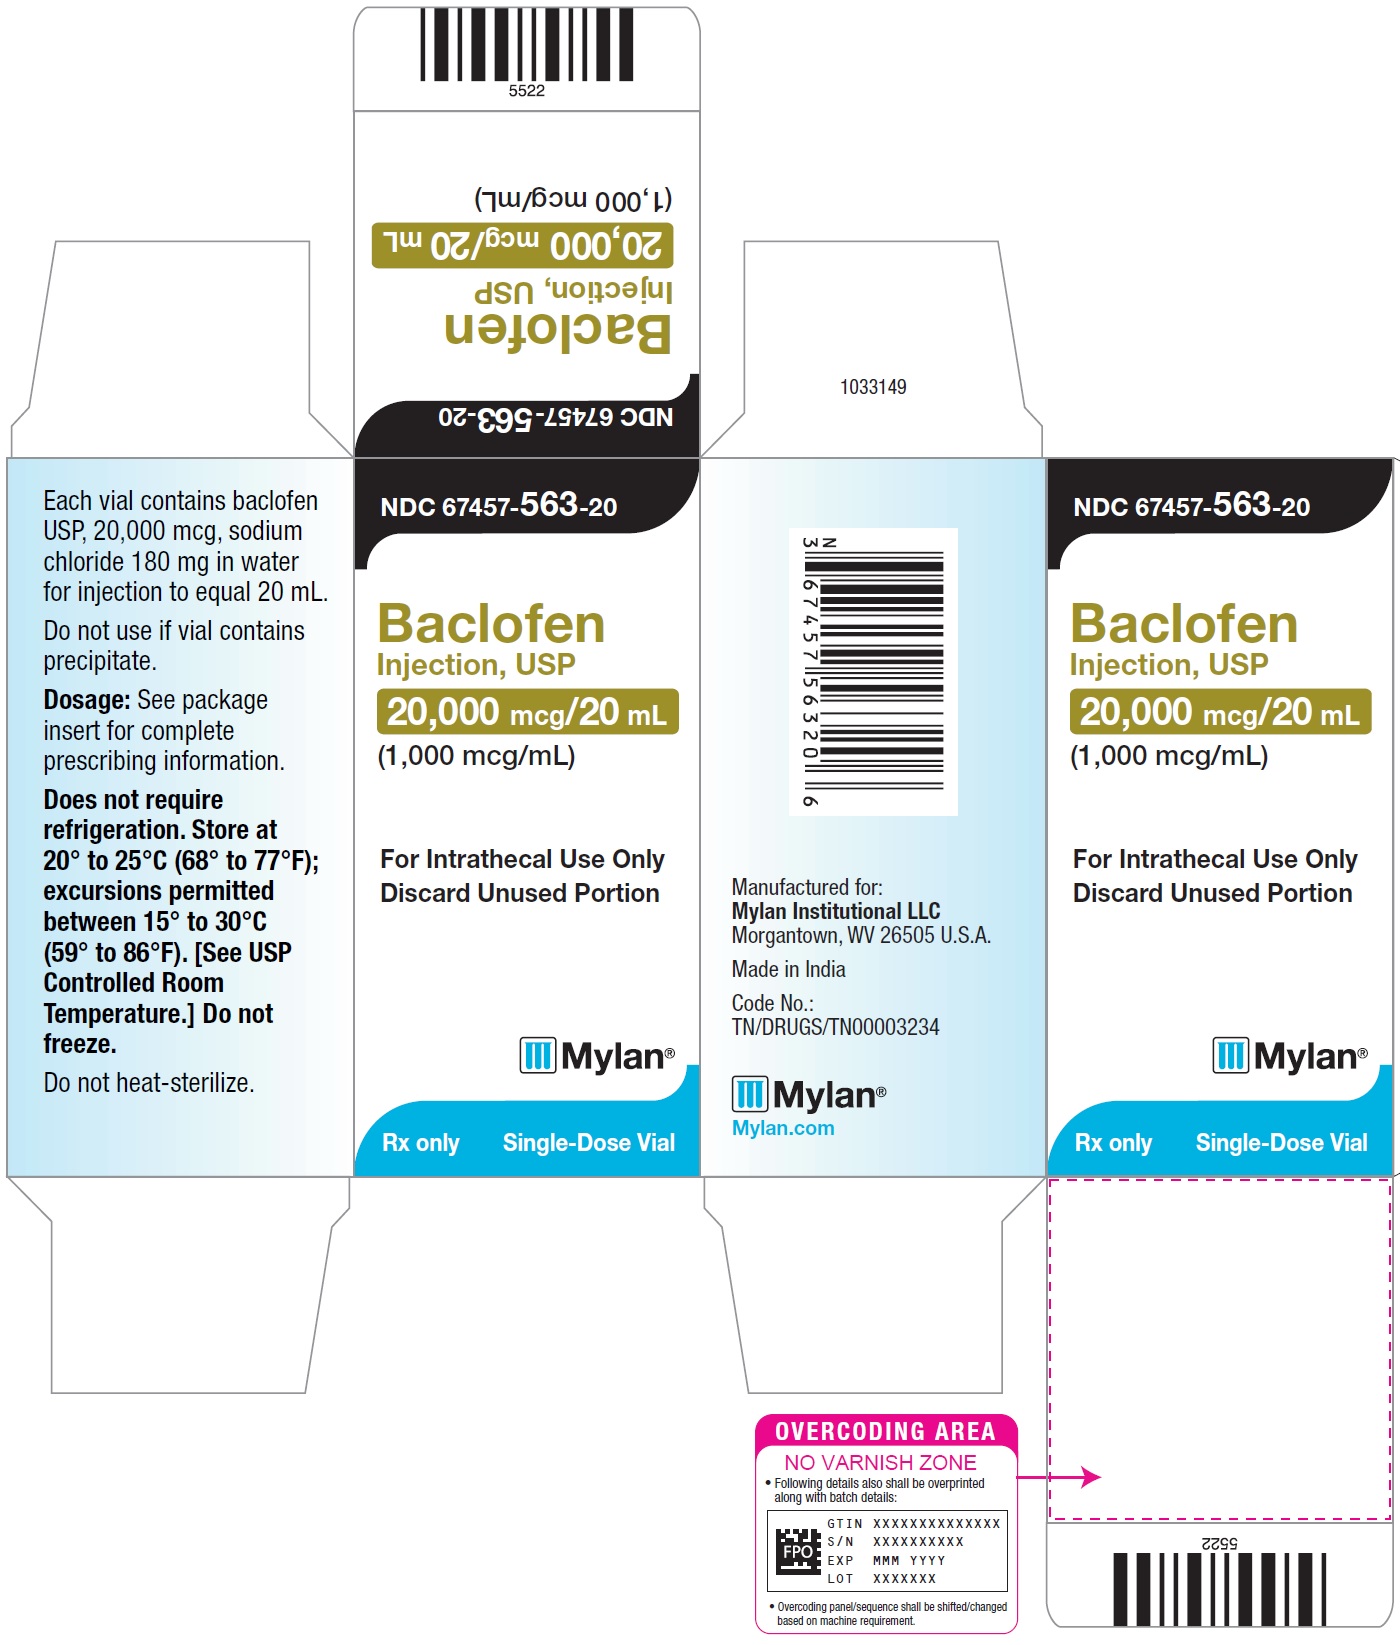 Baclofen Injection, USP 20,000 mcg/20 mL Carton Label